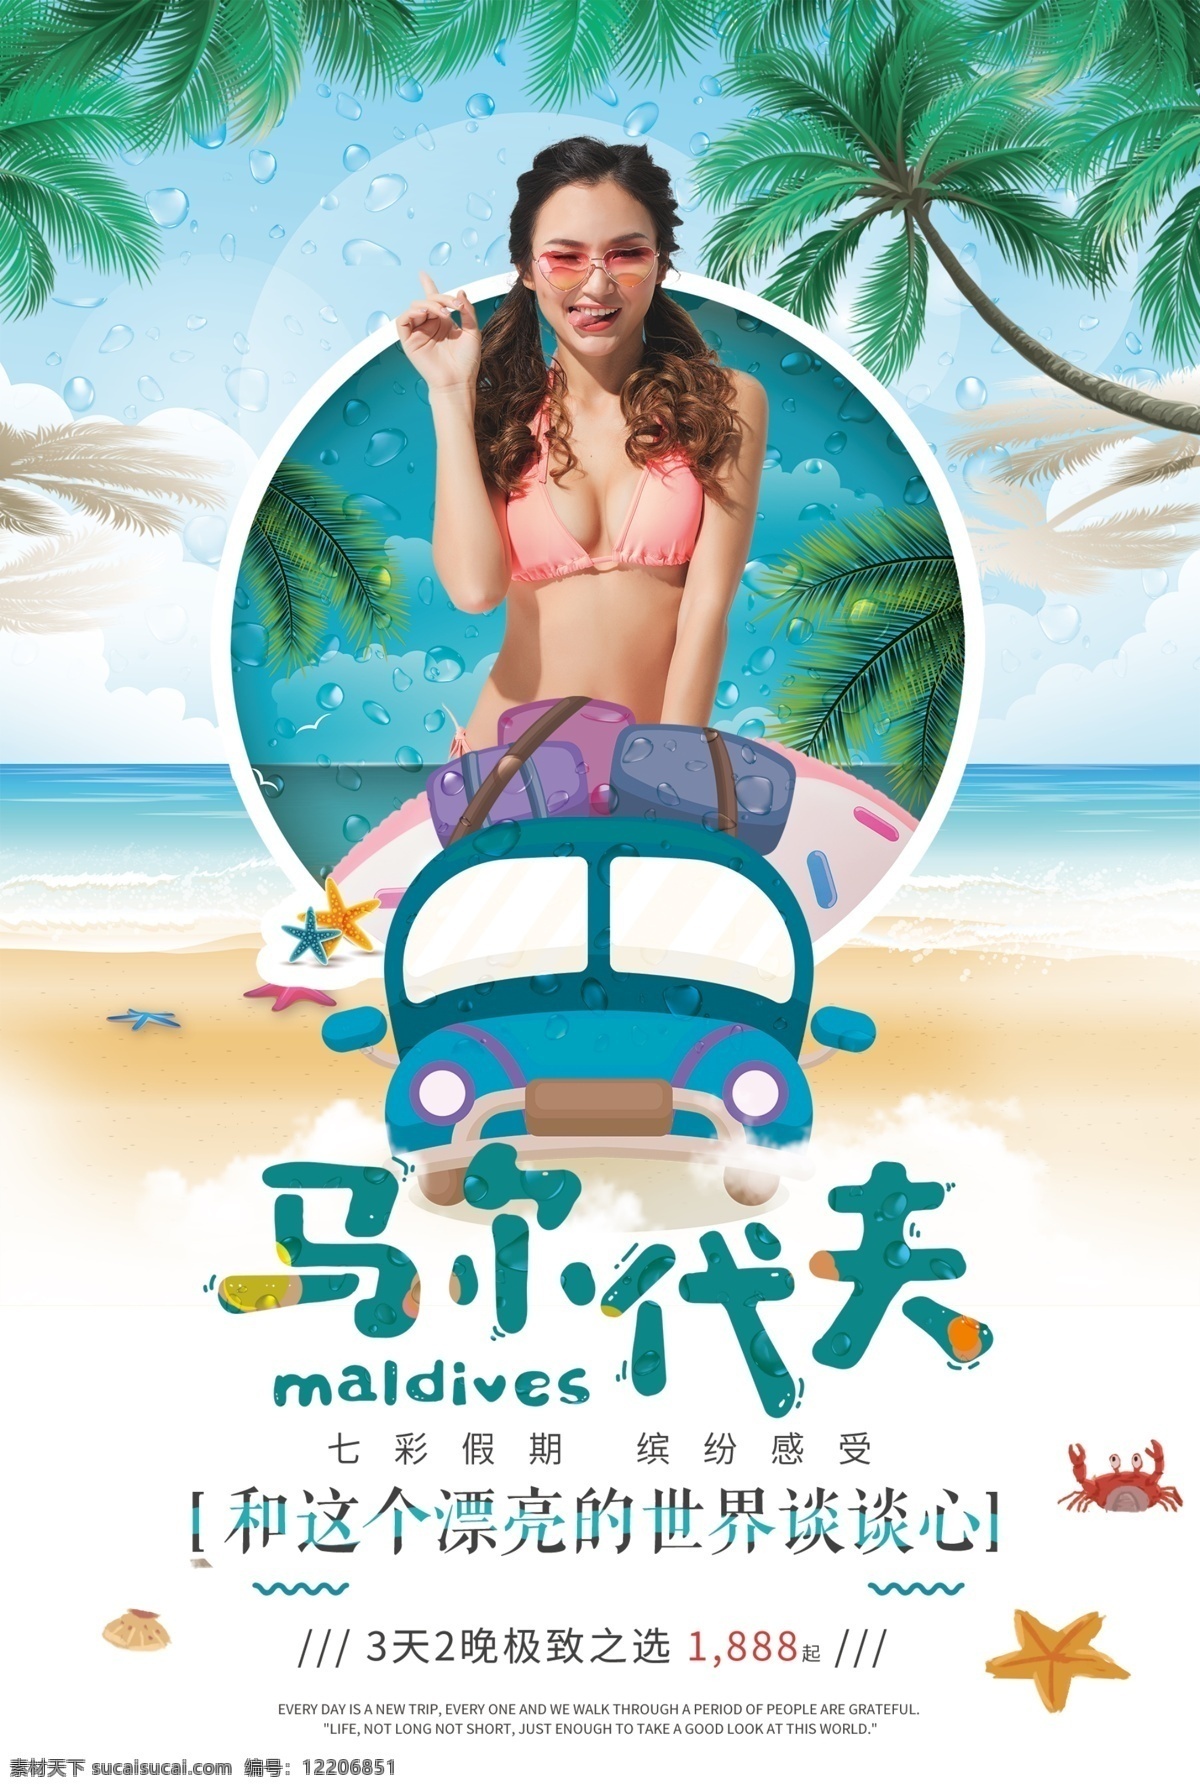 马尔代夫 海岛 旅游 海报 出国游 出境游 大海 插画海报 旅行 旅行社 沙滩 跟团游 自由行